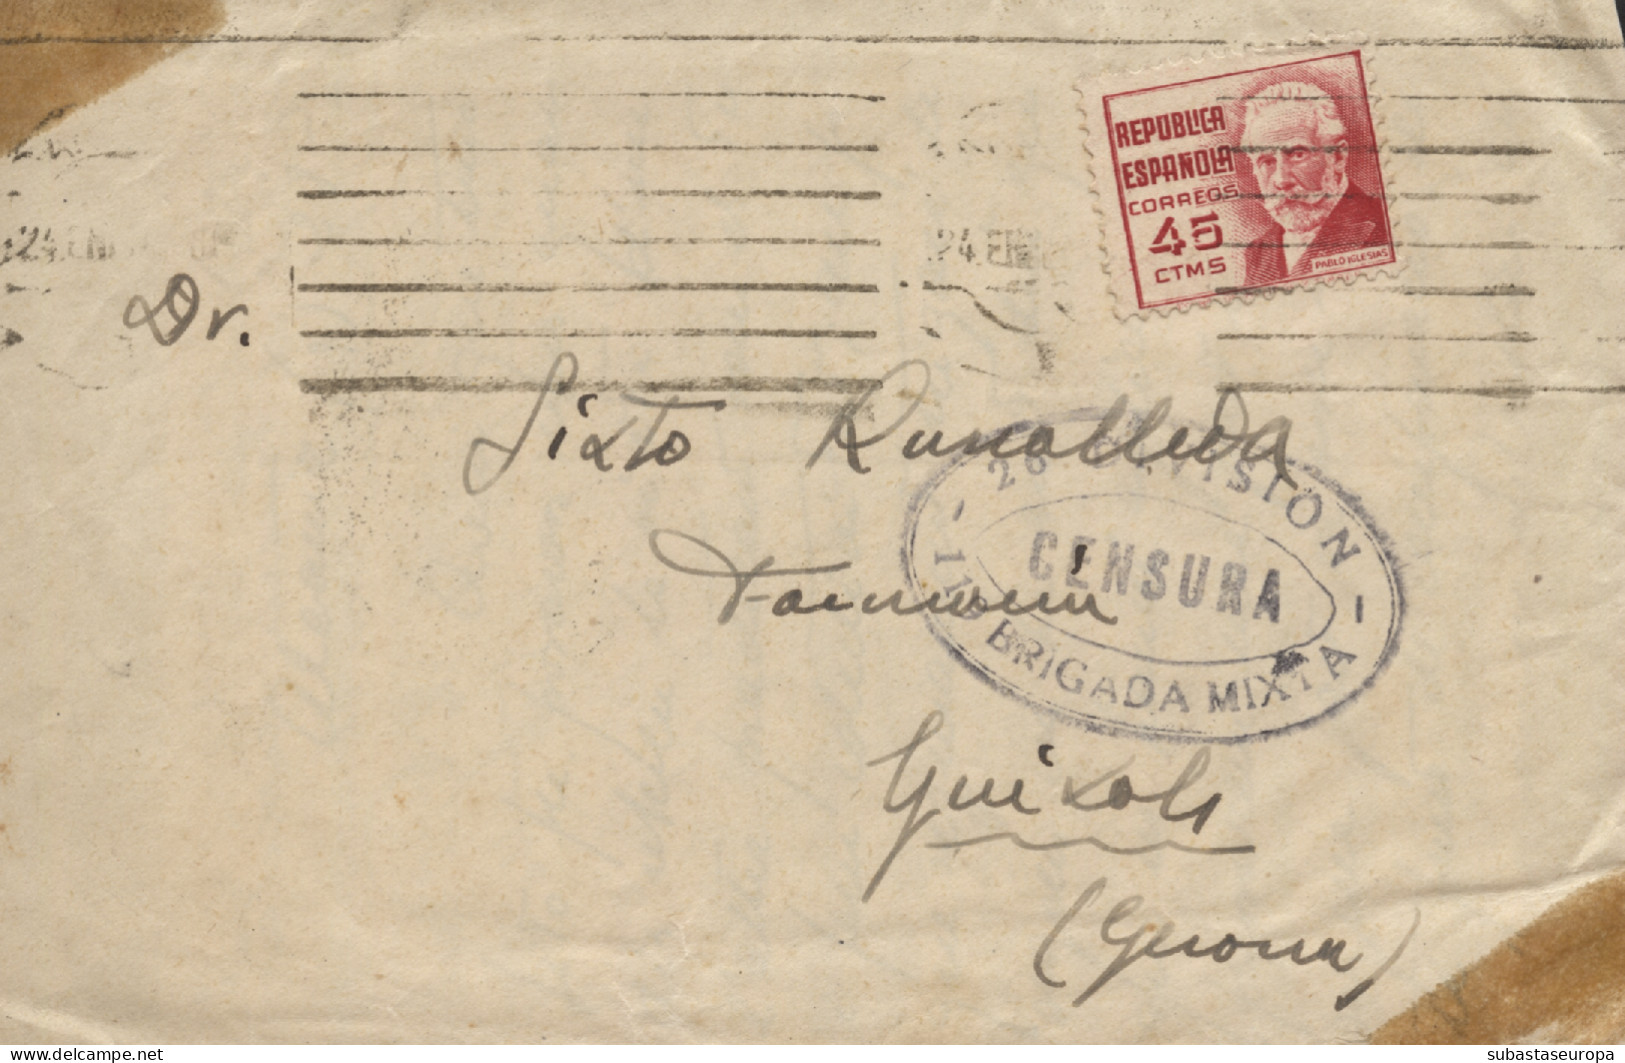 Carta De Alcañiz A Sant Feliu De Guíxols. Marca De Censura "26 División - Brigada Mixta". Año 1937. - Republicans Censor Marks